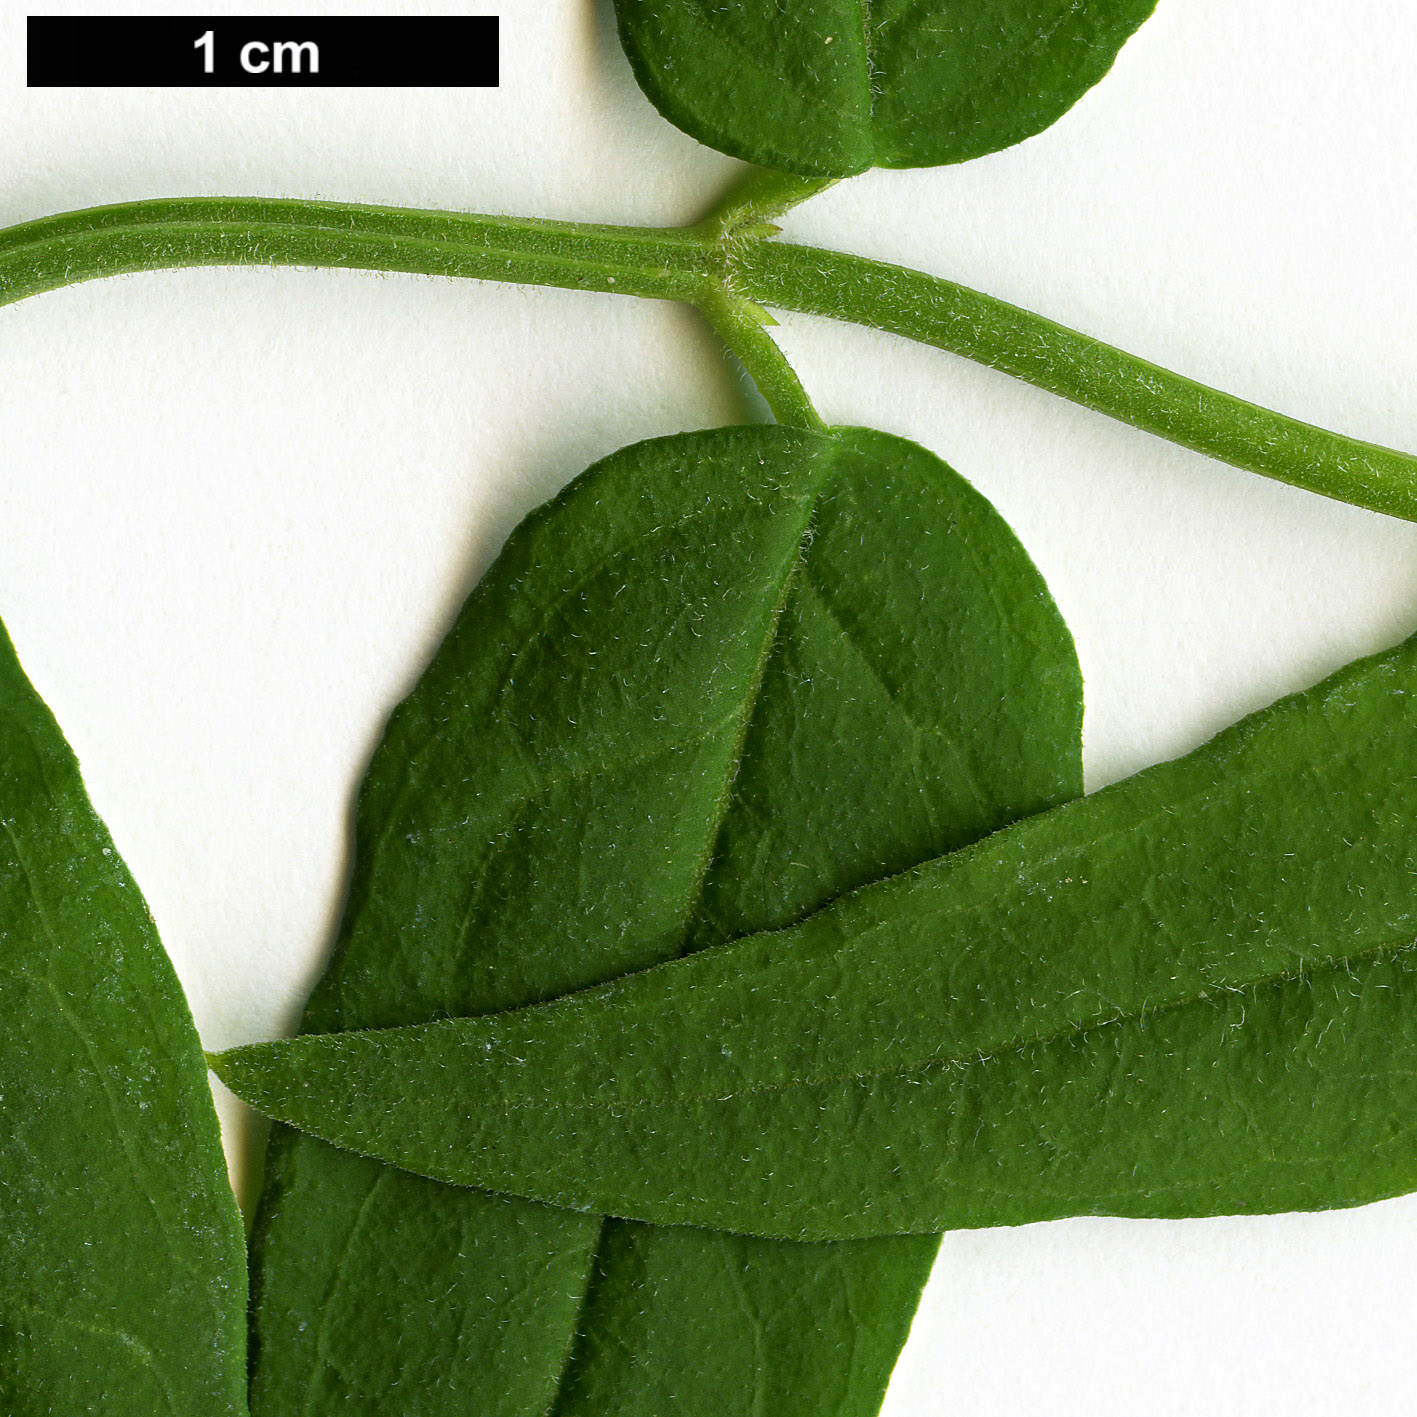 High resolution image: Family: Oleaceae - Genus: Jasminum - Taxon: beesianum